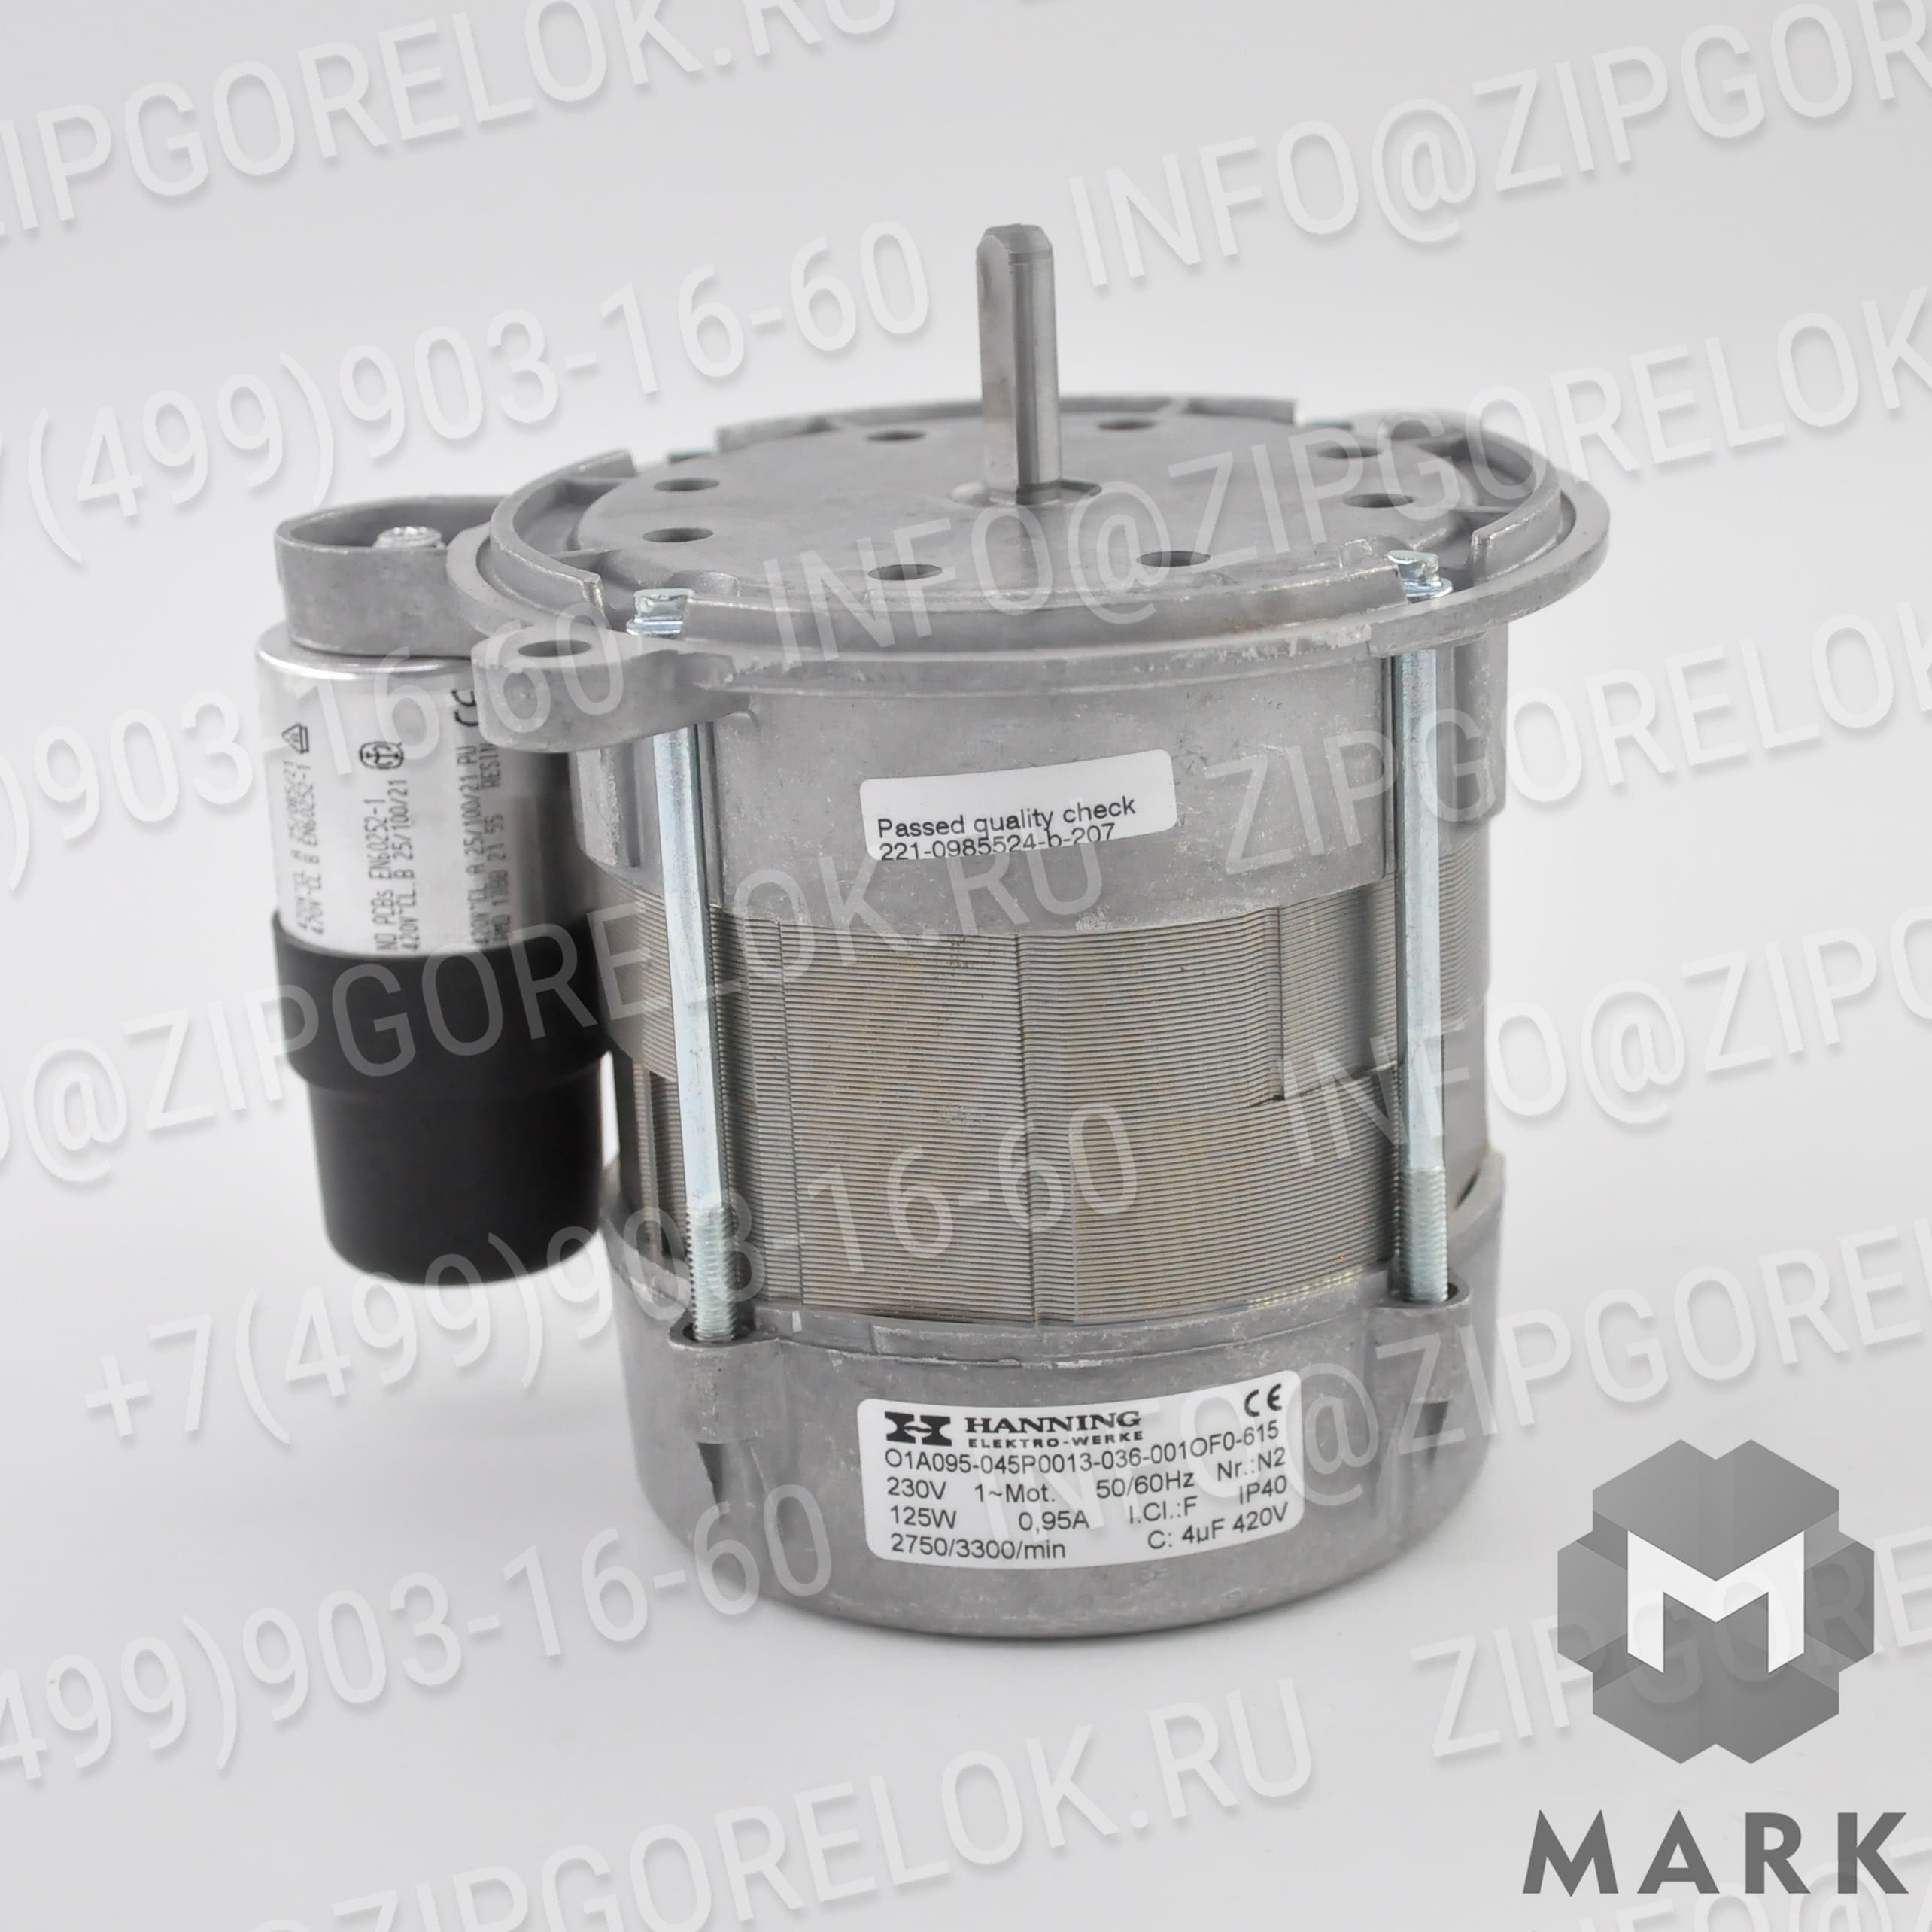 92090001 Жидкотопливные компоненты: Клапан байпаса OV20 (Immergas)